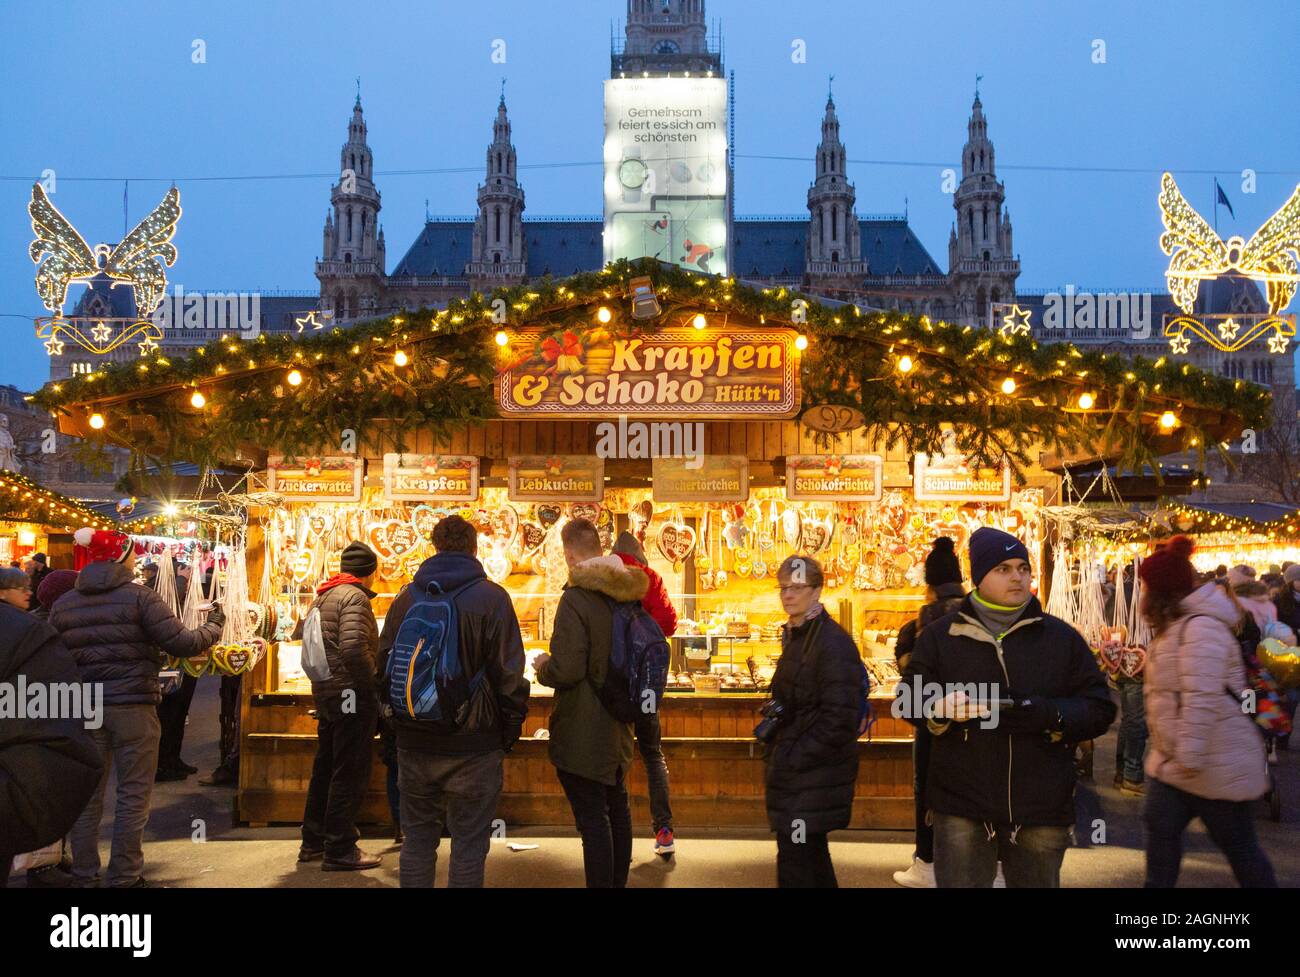 Wiener Weihnachtsmärkte - Menschen einkaufen am Abend, das Rathaus Weihnachtsmarkt, Wien Österreich Europa Stockfoto